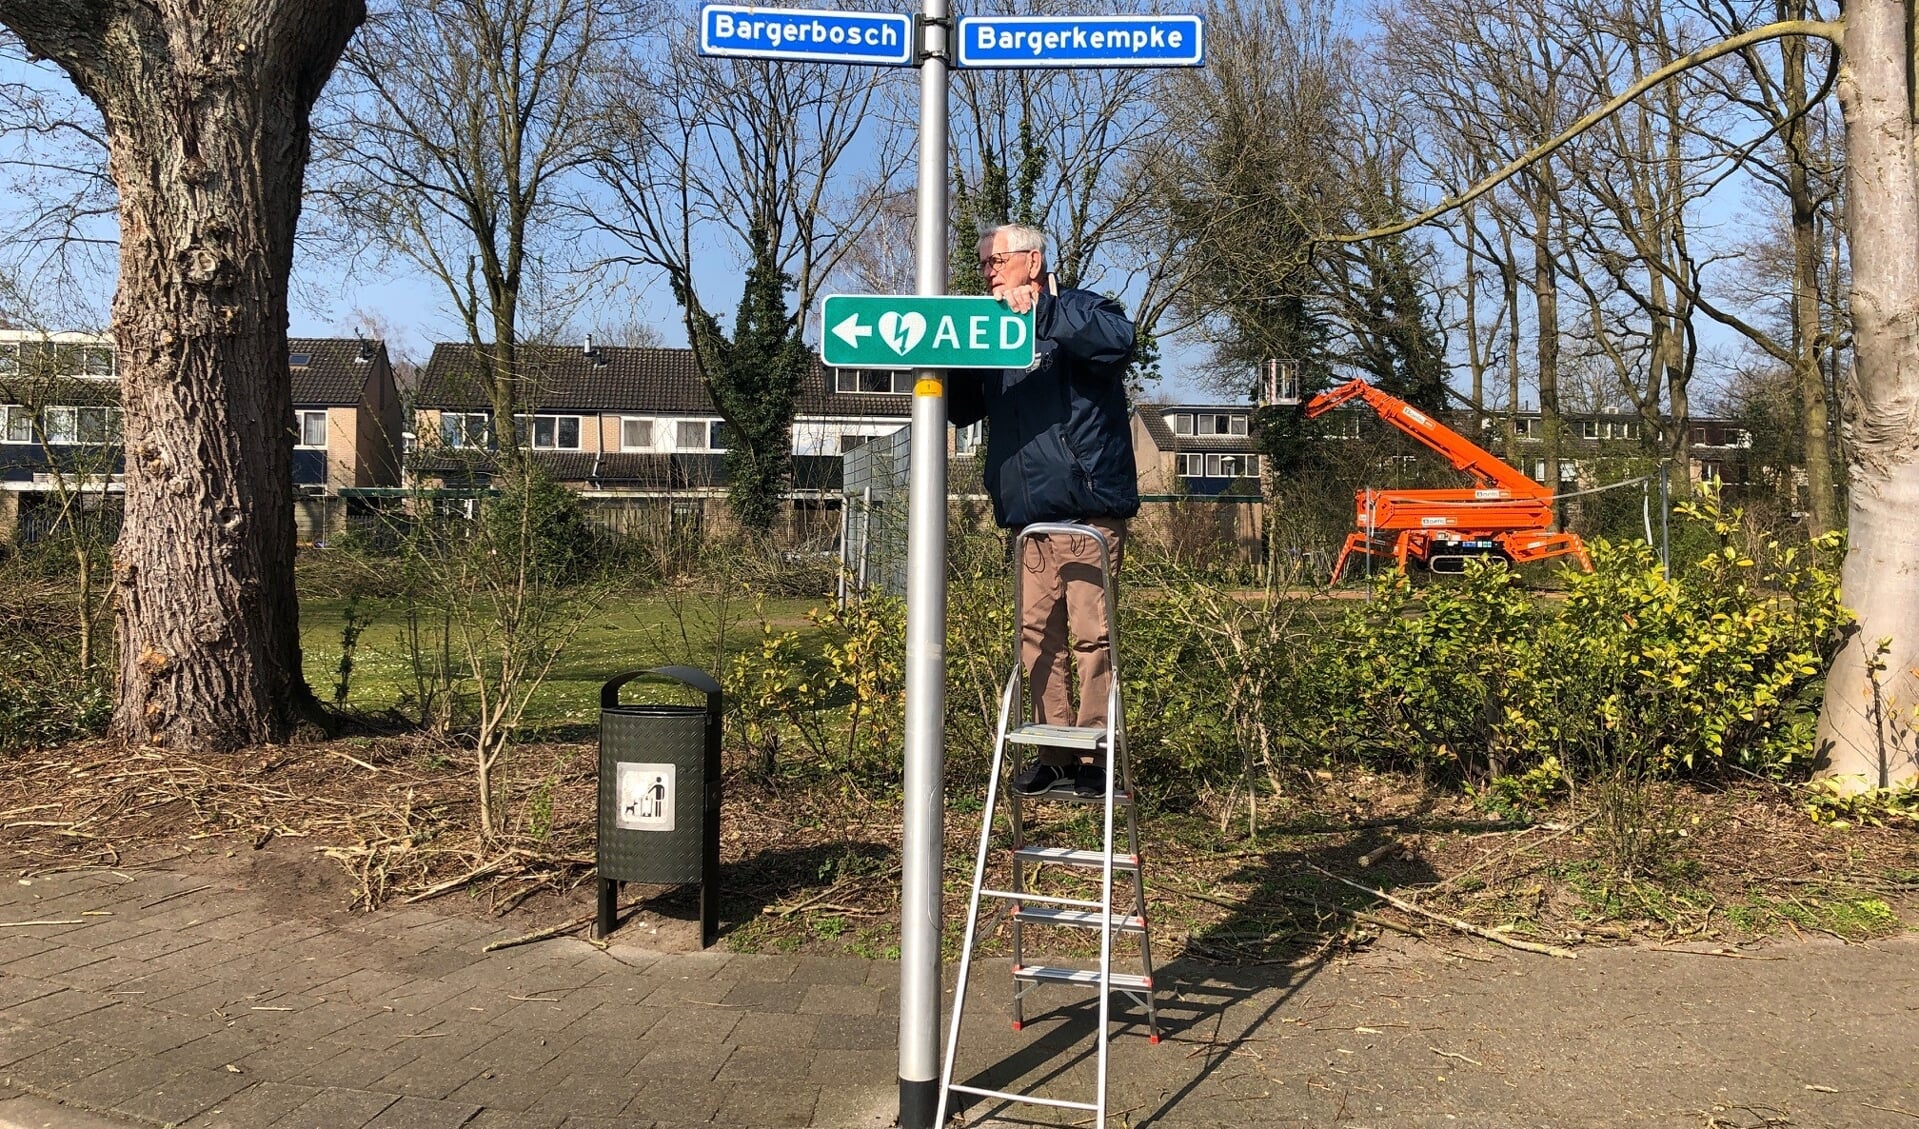 Het verwijsbord bij Bargerkempke en Bargerbosch is al geplaatst door Bert van Diest, vrijwilliger van het onderhoudsteam van Hart4Winterswijk . Foto: PR